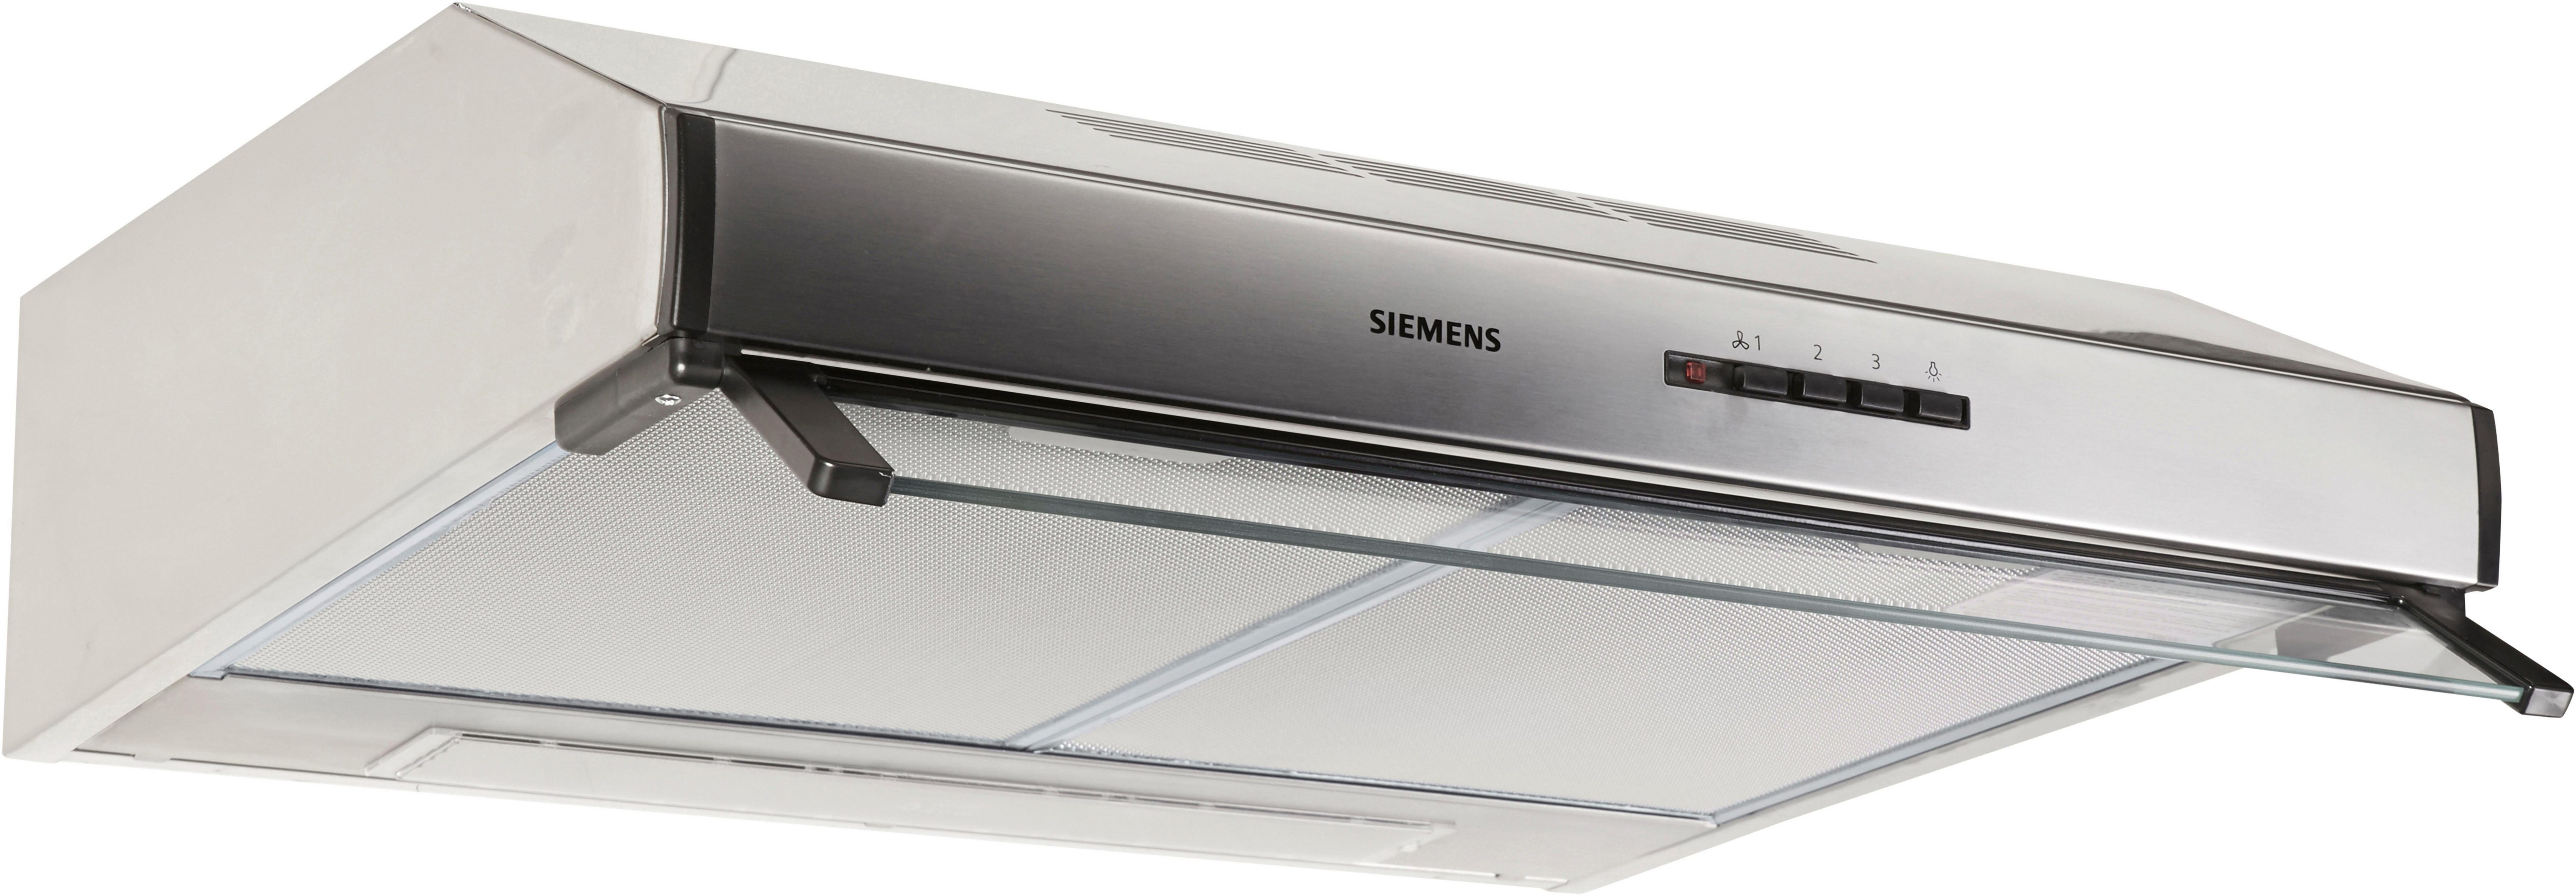 SIEMENS Unterbauhaube von Die Serie m³/h Kochen für sorgt iQ100 Luft frische beim 350 LU63LCC50, Lüfterleistung